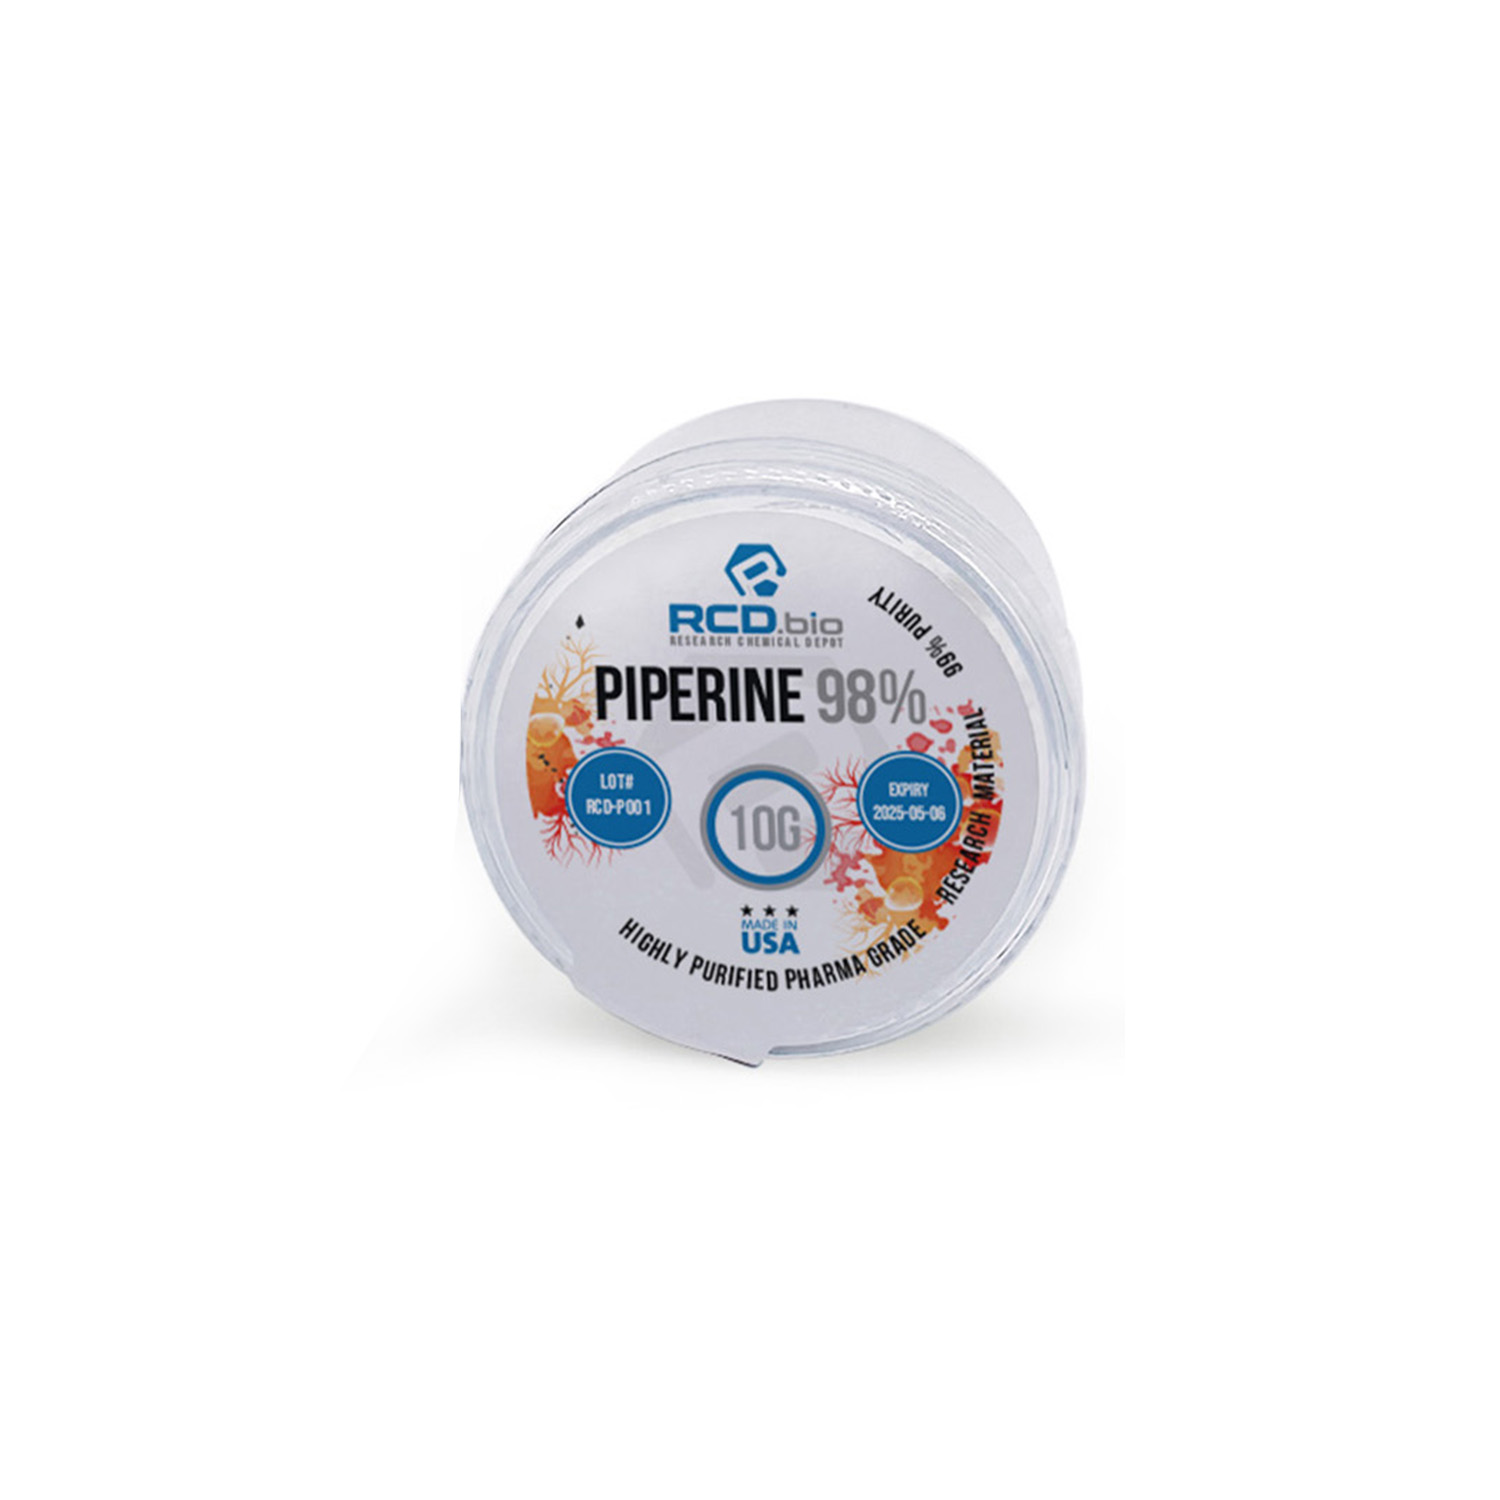 Piperine-98-10G_NU